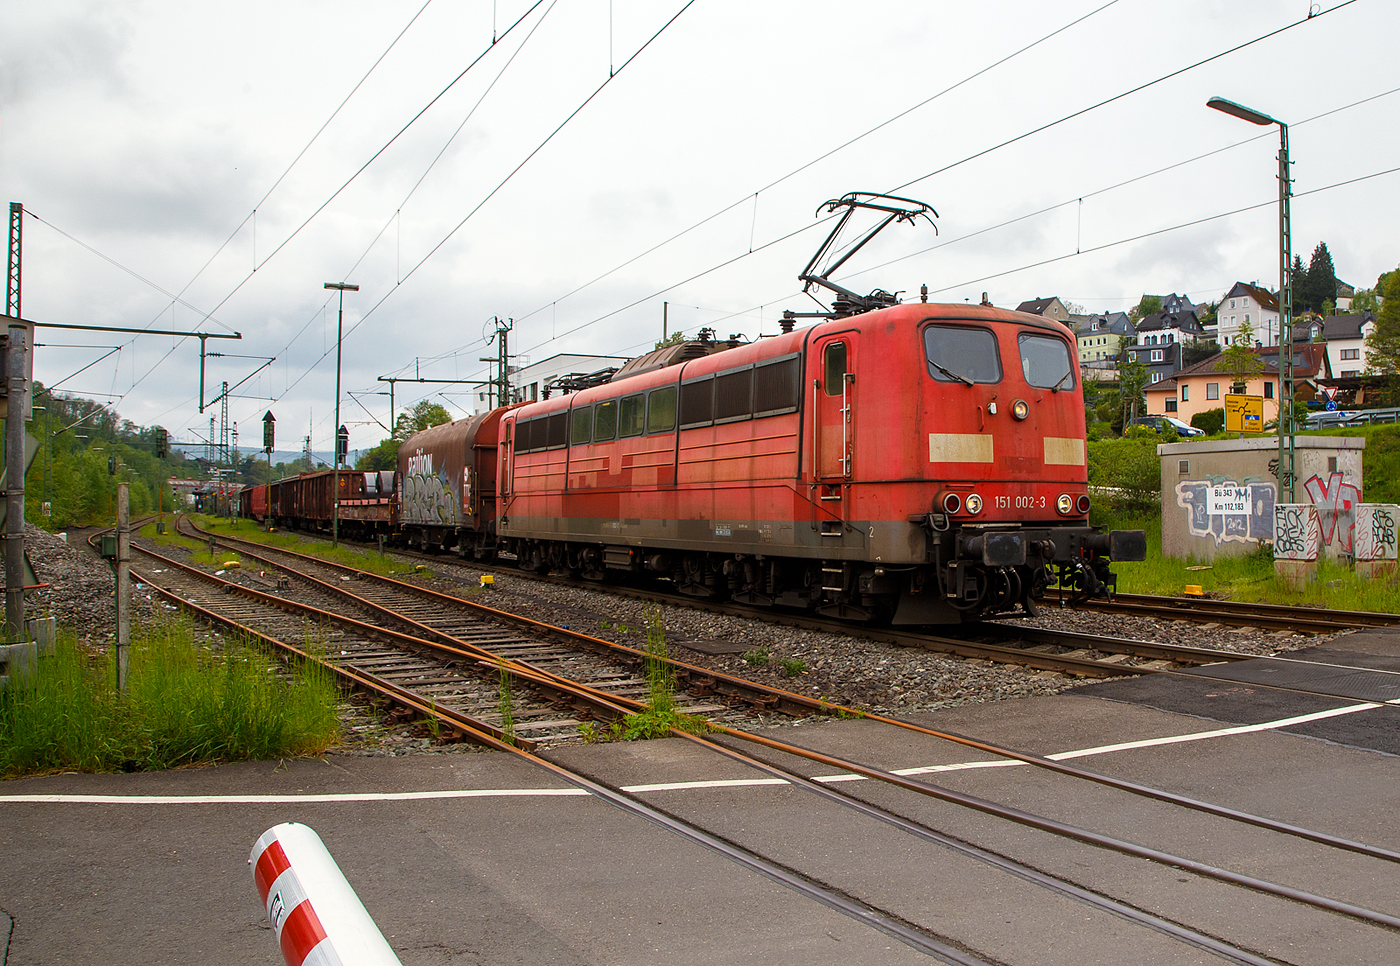 Die an die DB Cargo AG vermietete Railpool 151 002-3 (91 80 6151 002-3 D- Rpool) fährt mit einem gemischten Güterzug am 11.05.2023 durch Niederschelden (hier beim Bü 343 – km 112,183 der Siegstrecke) in Richtung Siegen.

Die Lok wurde 1973 von Krupp in Essen unter der Fabriknummer 5174, der elektrische Teil ist von AEG unter Fabriknummer 8820, gebaut, und an die Deutsche Bundesbahn geliefert. Bis zum 31.12.2016 gehörte sie zur DB Cargo AG. Zum 01.01.2017 wurden je 100 sechsachsige elektrische Altbau-Lokomotiven der Baureihen 151 und 155 an ein Konsortium aus dem Lokvermieter Railpool verkauft. Die DB Cargo mietet daraufhin 100 Loks von Railpool wieder an. Die anderen Maschinen werden dem freien Markt angeboten.

Diese sechsachsigen Loks (Co’Co’) sind immer noch starke Zugpferde, und so manche moderne Lok hat nicht diese Leistungsfähigkeit. Mit einer Stundenleistung von 6.288 kW (8.550 PS) bei 92 km/h und einer Anfahrzugkraft von 395 kN können diese Loks 3.000 t Züge bei 3 ‰ Steigung noch mit einer Dauergeschwindigkeit 75 km/h ziehen, bei 2.000 t Zügen sind es 100 km/h.
